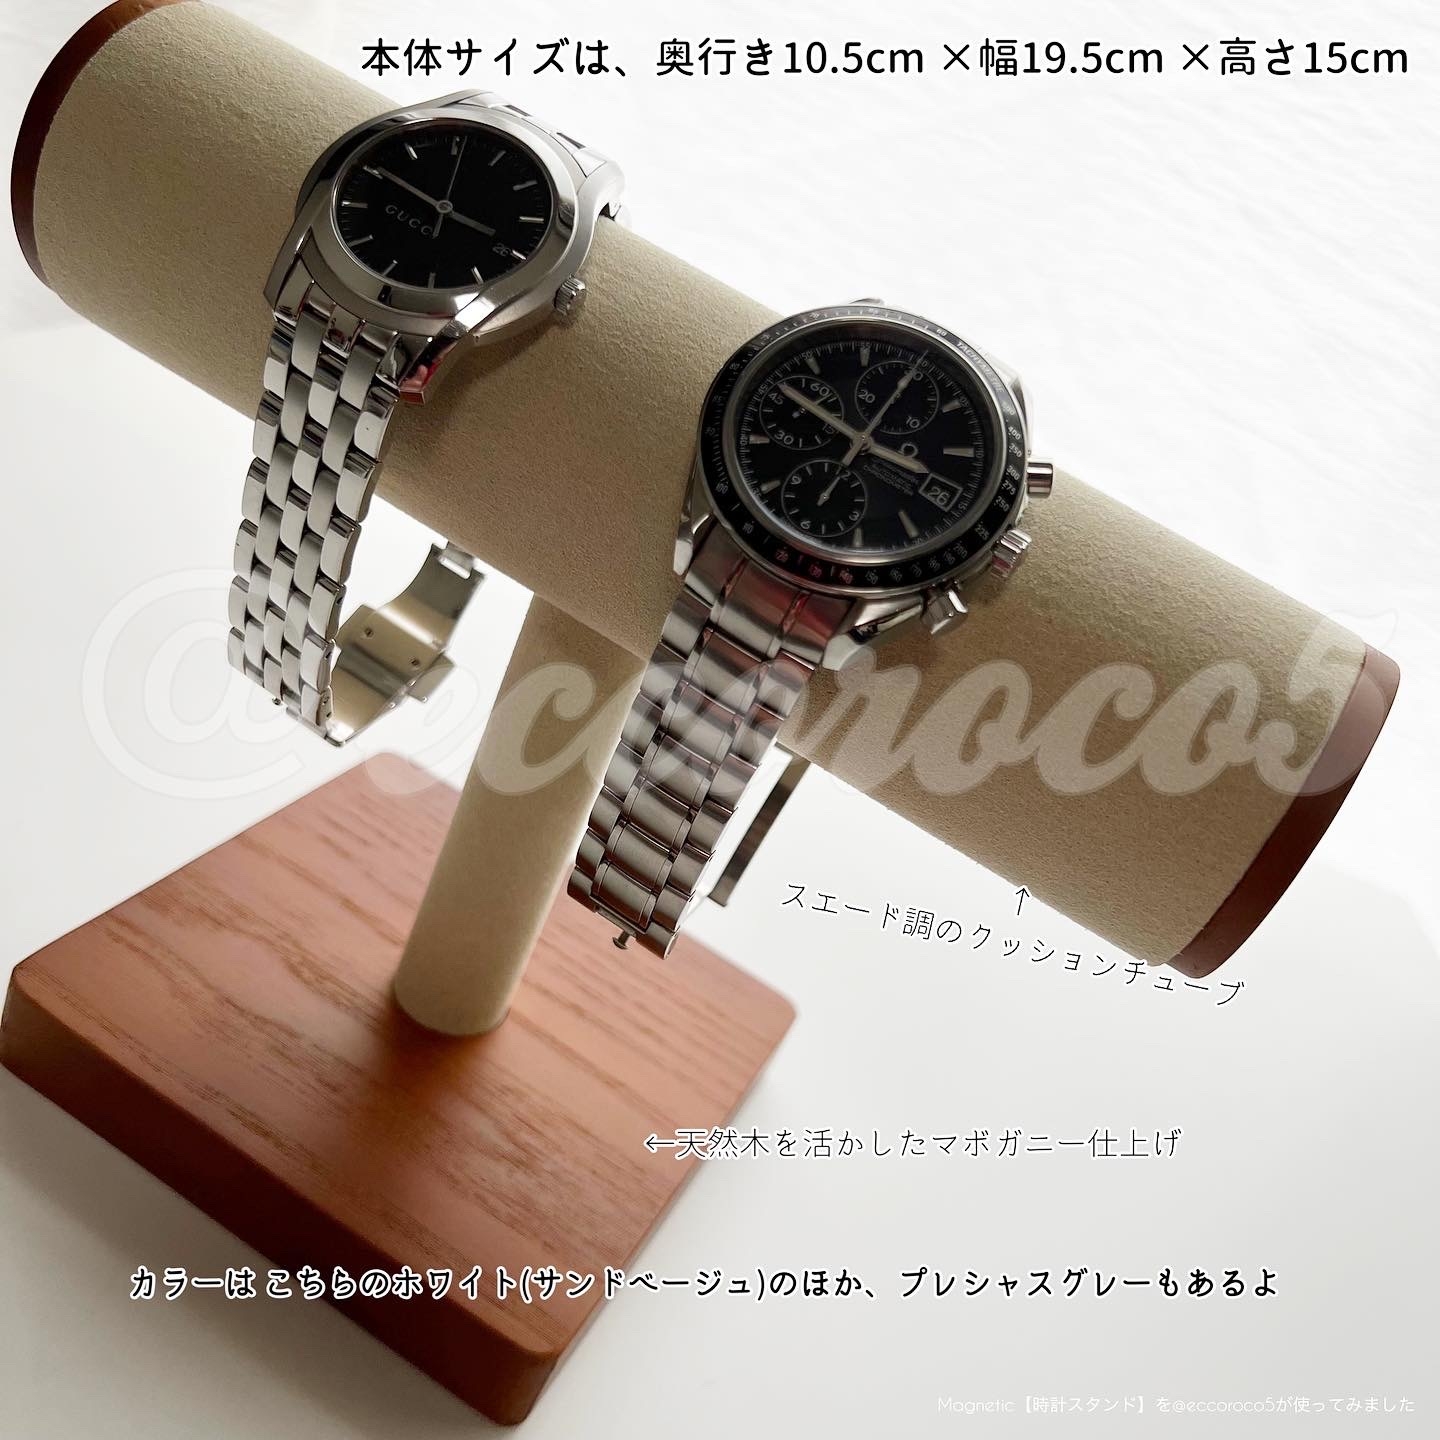 Magnetic(マグネティック) 腕時計スタンドの良い点・メリットに関する@eccoroco5さんの口コミ画像2